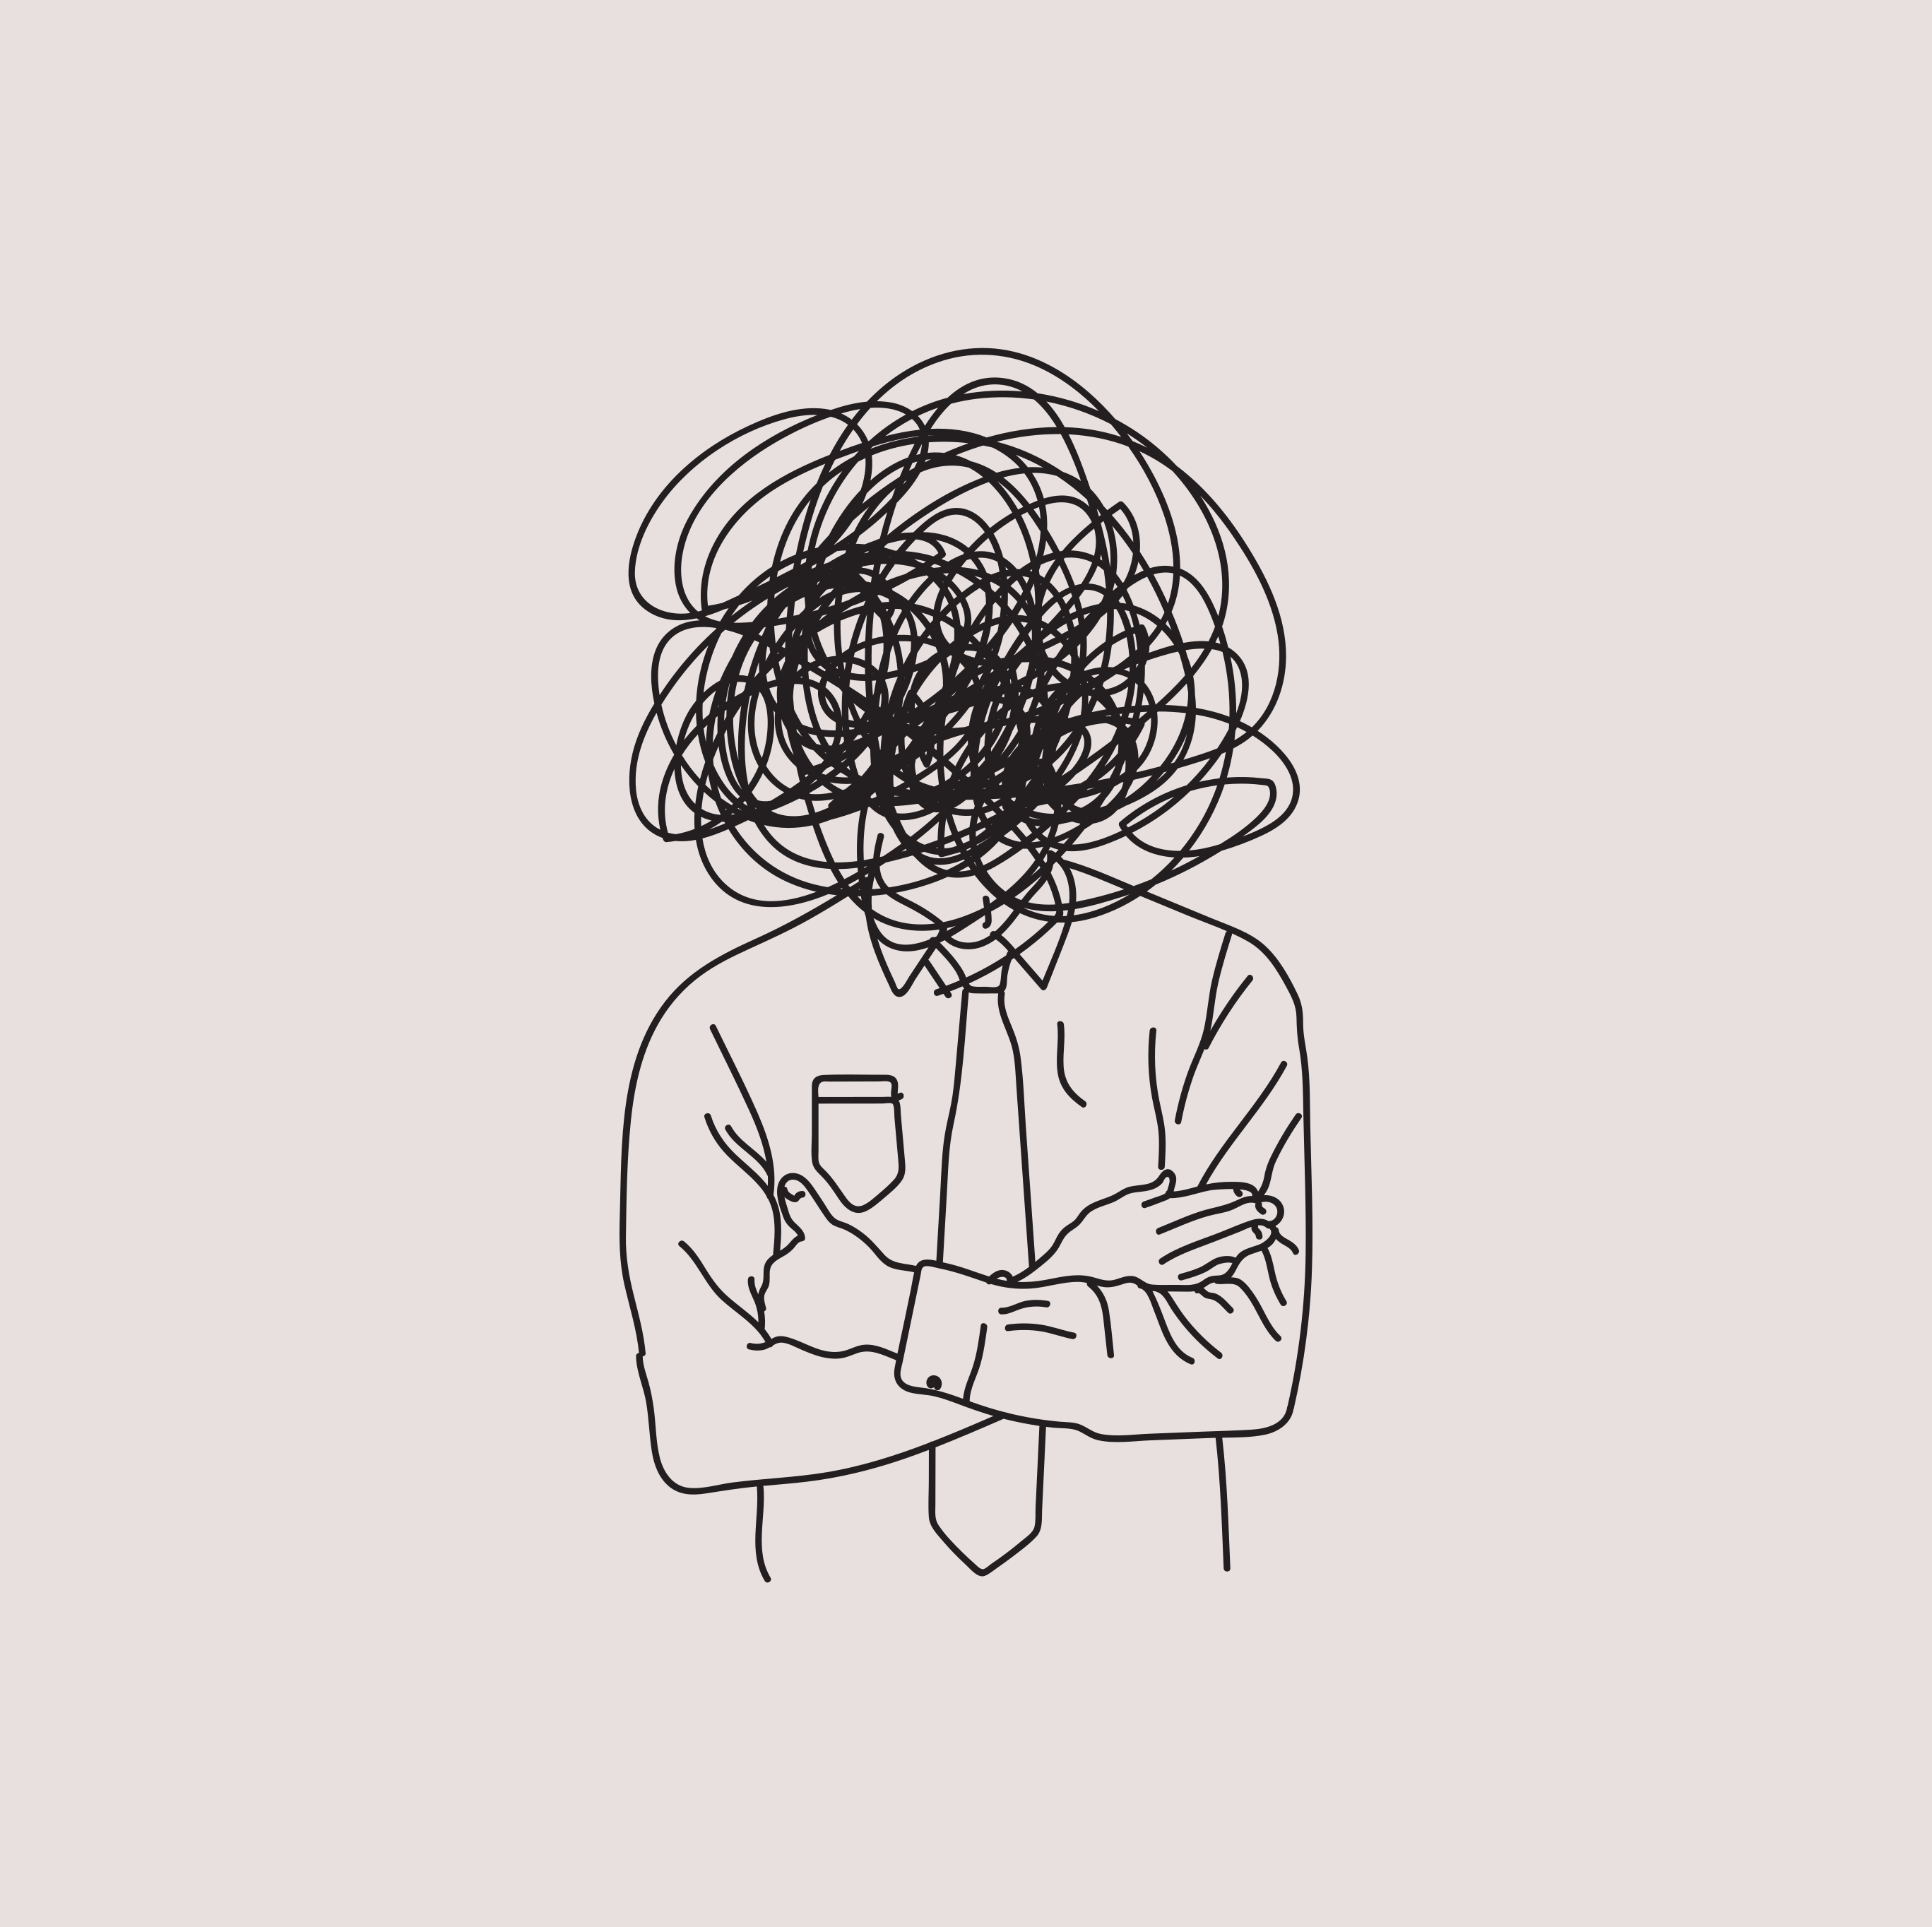 Desenho de pessoa de roupa social e cabeça coberta por rabiscos.